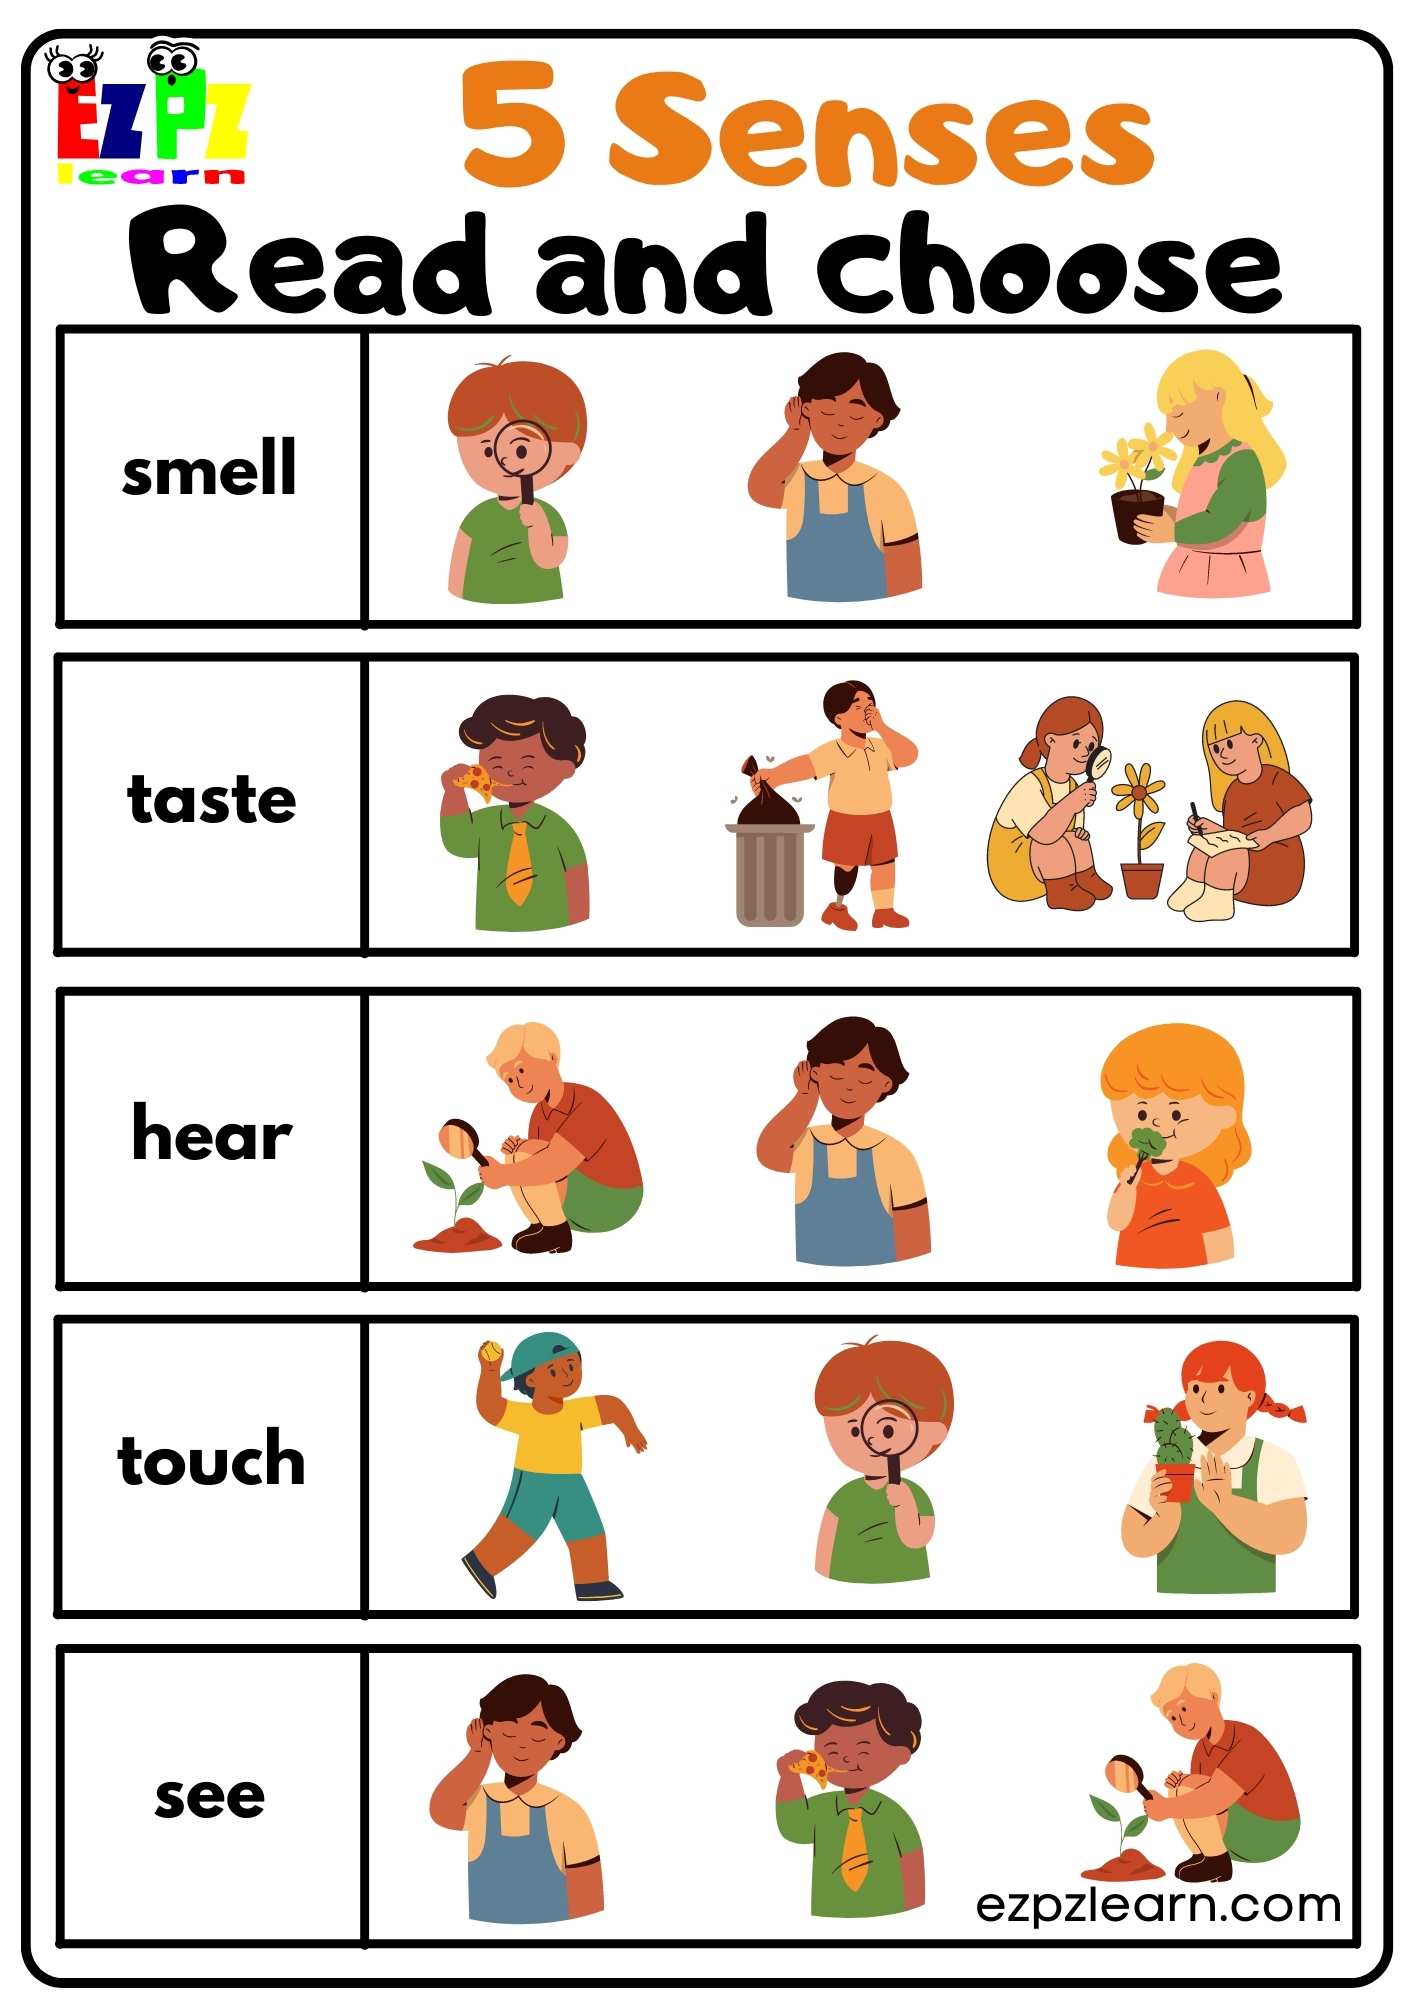 Five Senses Read And Choose Worksheet For Kindergarten And ESL Students 